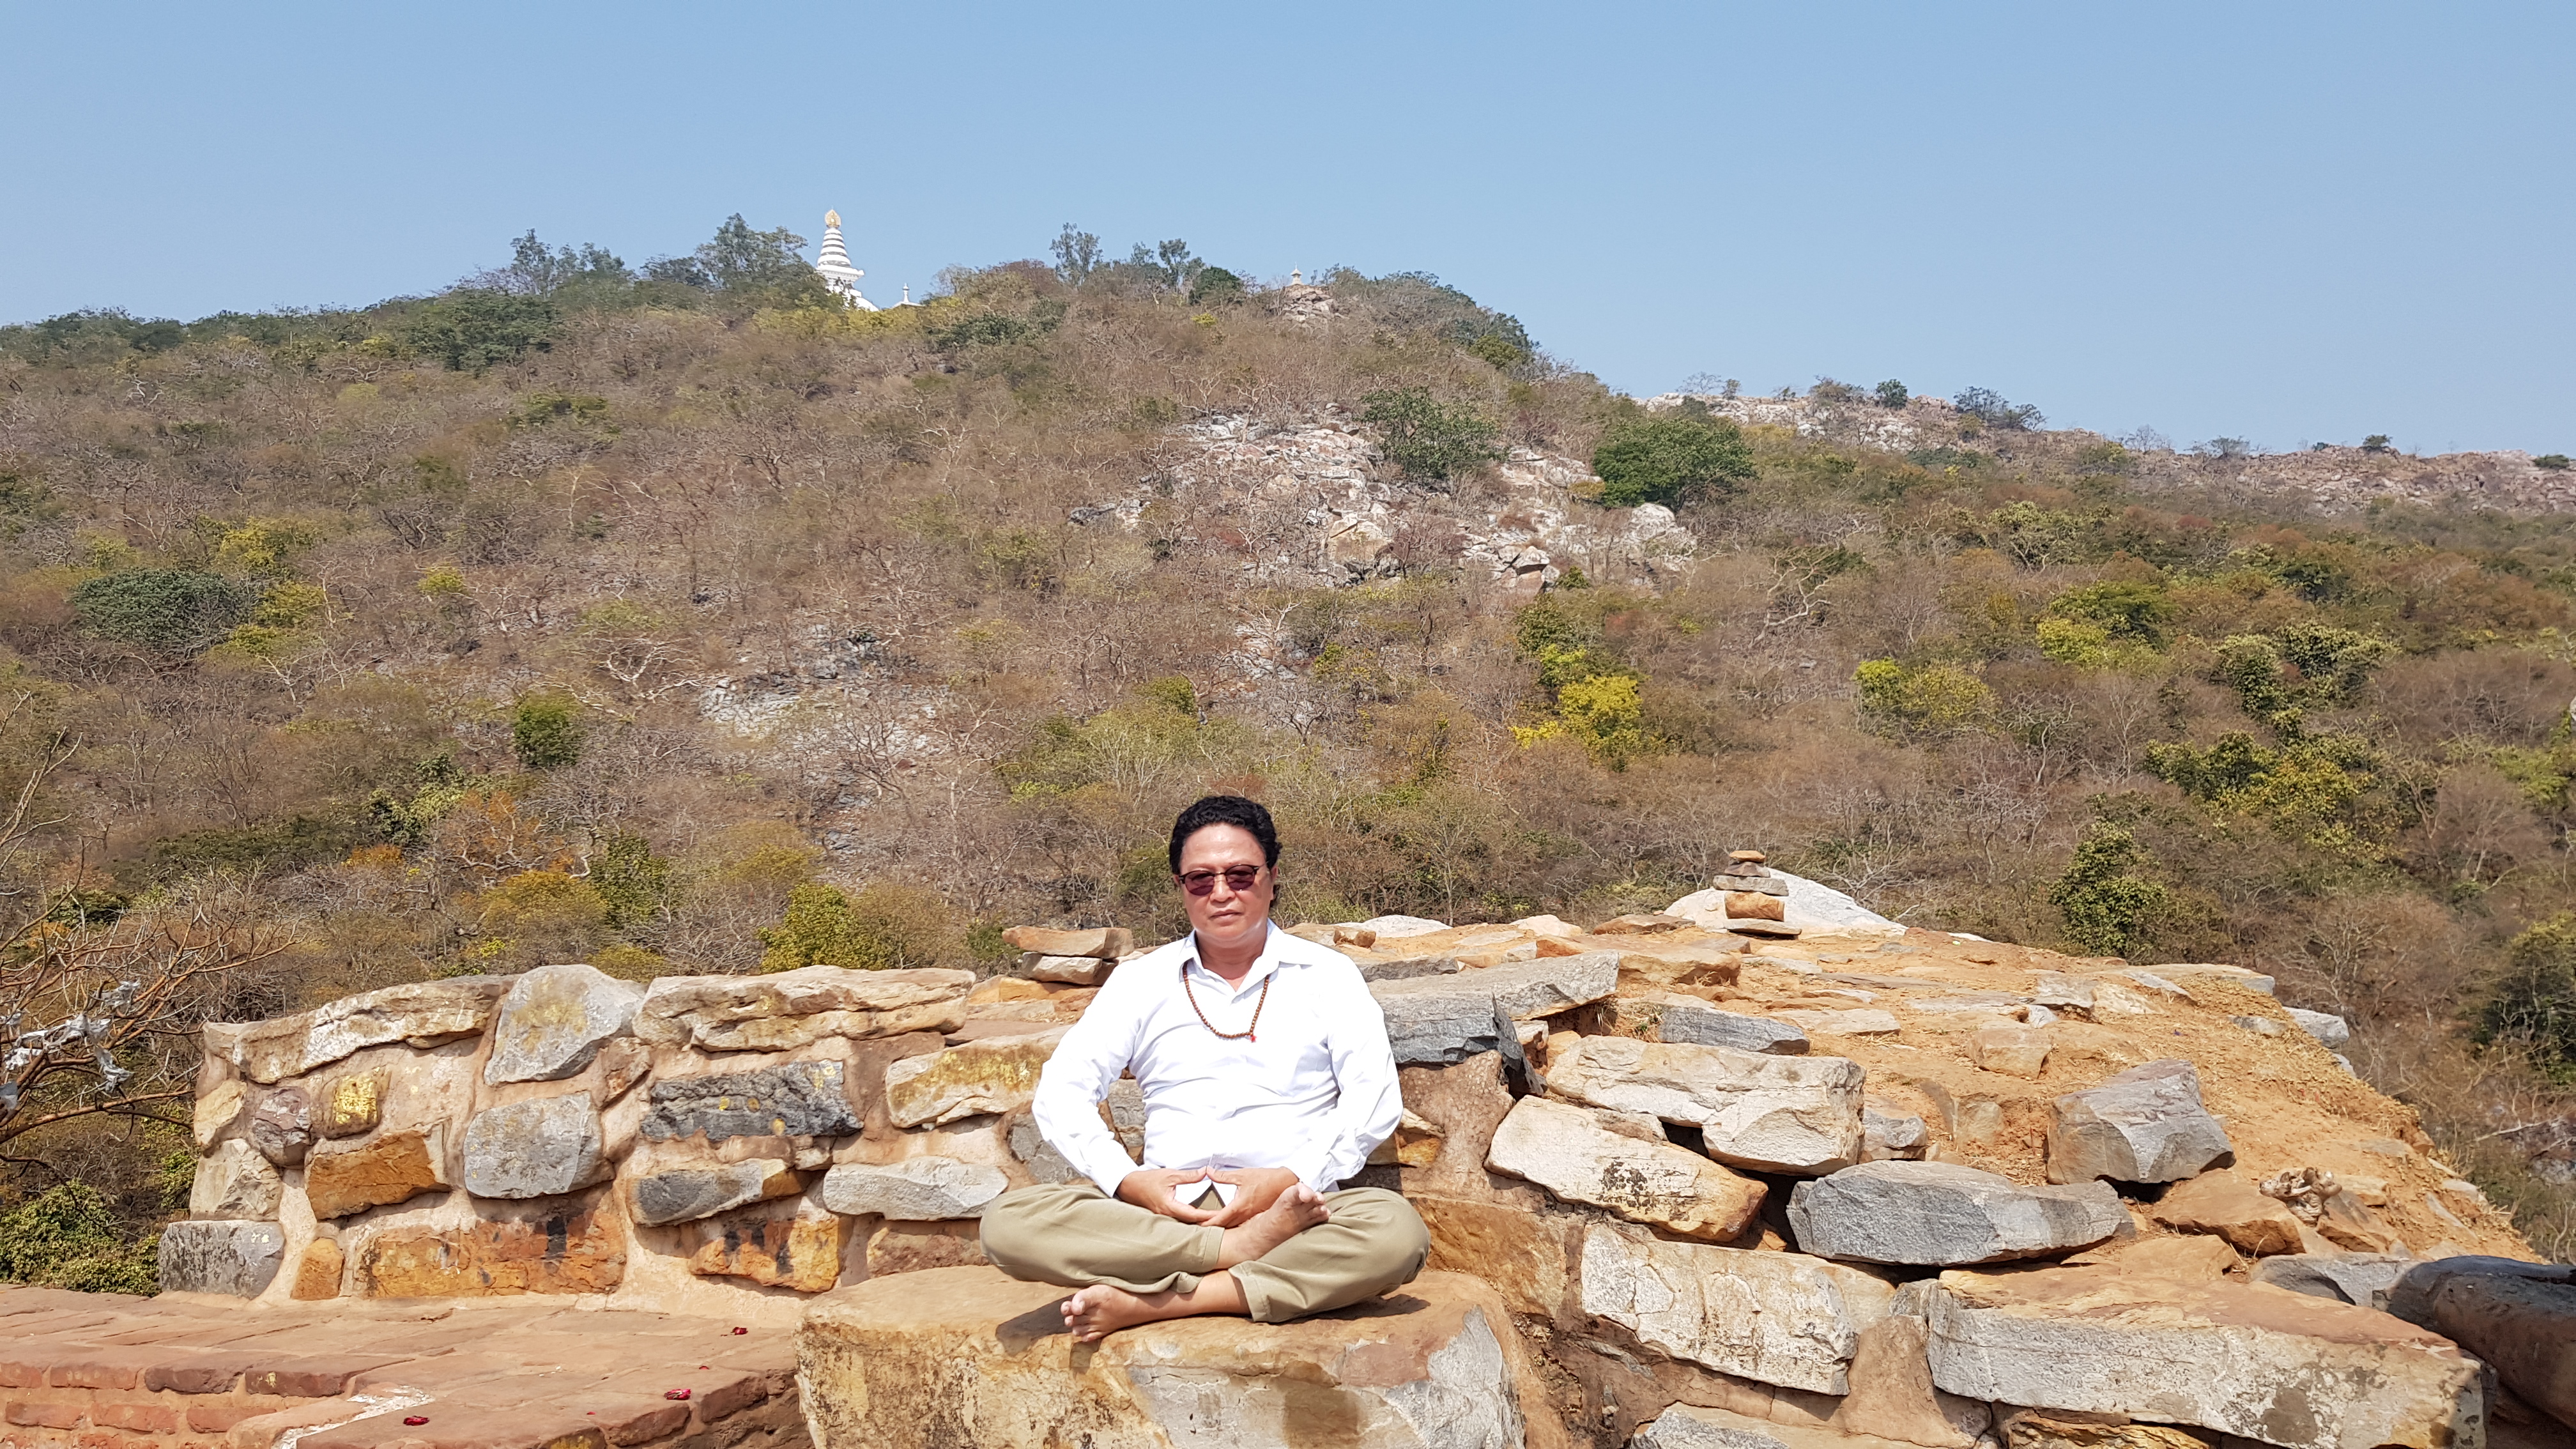 Núi Linh Thứu (Gridhakuta Peak) - nơi Đức Phật đã thuyết giảng nhiều bộ kinh quan trọng trong lịch sử Phật giáo như kinh Pháp Hoa, kinh Lăng Nghiêm,.. Rajgir (Thành Vương Xá) là cố đô của vương quốc Magadh hùng mạnh, có niên đại cách đây gần 3000 năm. Nằm lọt thỏm trong một thung lũng và bao phủ xung quanh là rừng núi xanh tốt, nơi này mang một vẻ đẹp bình yên đến lạ. Đây chính là nơi Đức Phật giảng đạo và sinh sống trong nhiều năm qua. — ở Rajgir.
